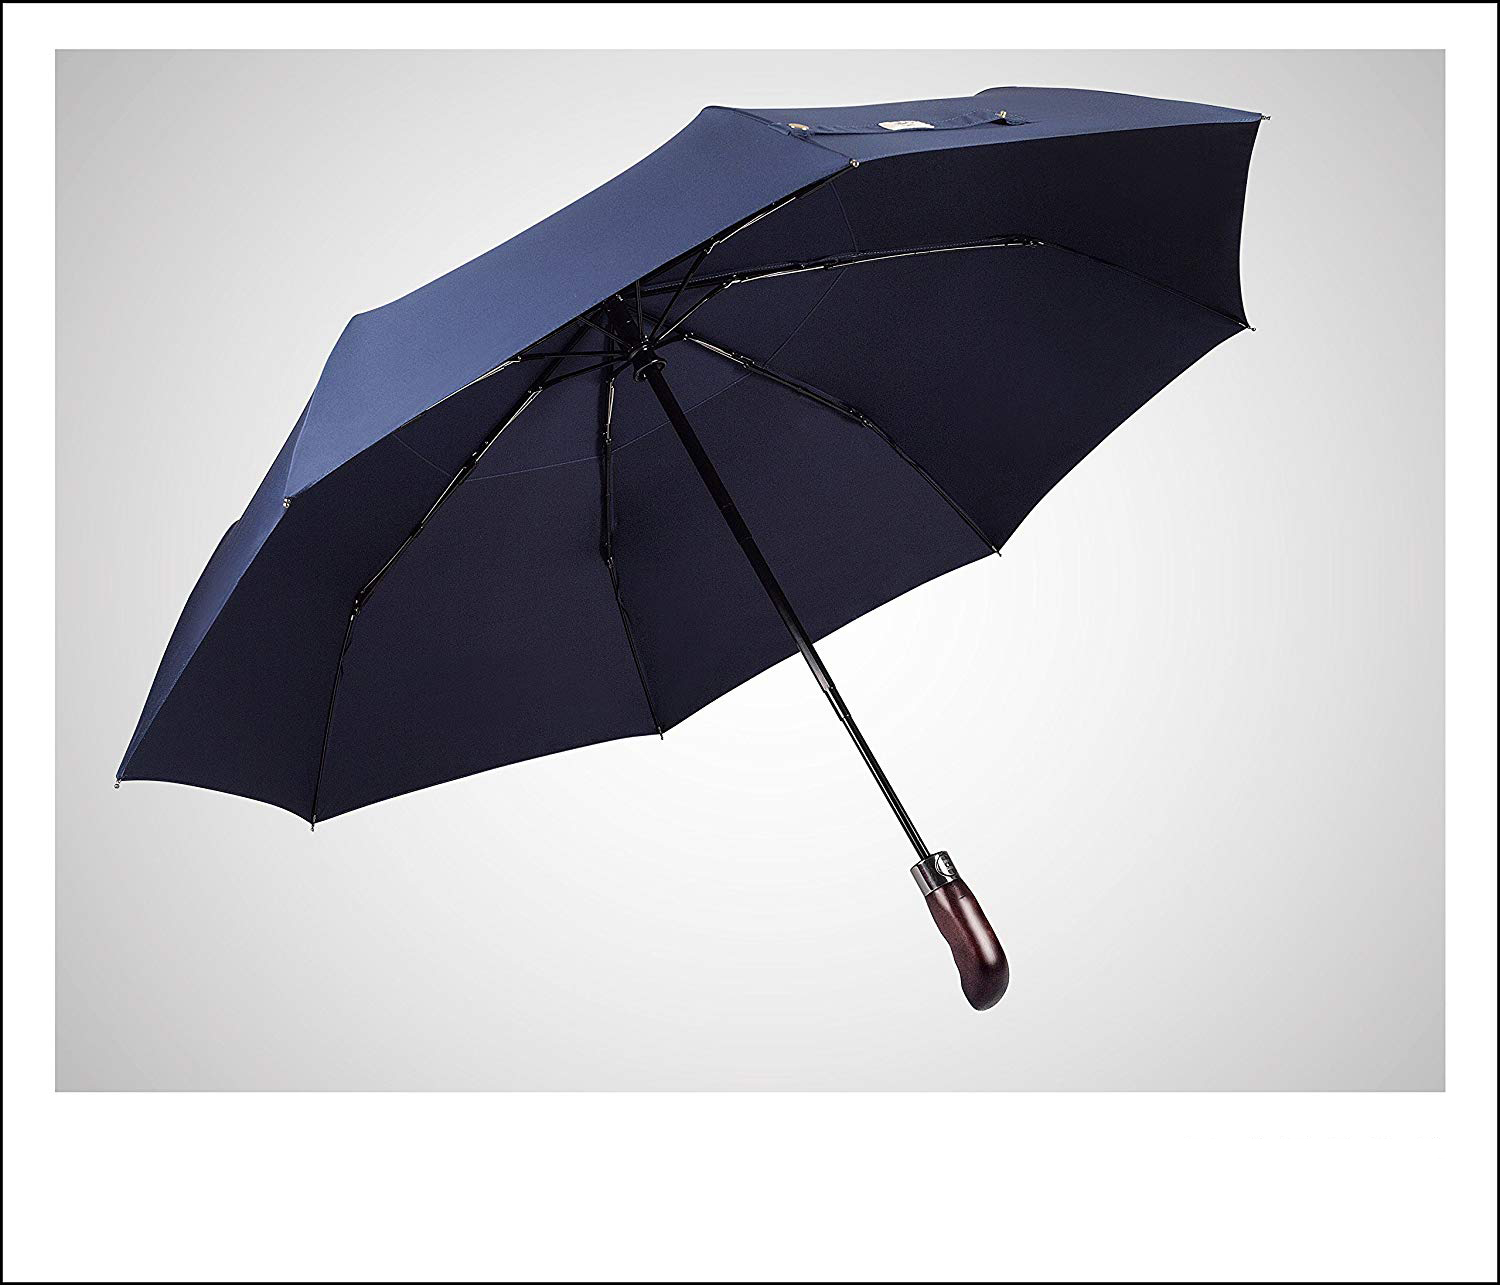 Niestandardowy w pełni automatyczny drewniany uchwyt 3-krotnie podwójny parasol z baldachimem z nadrukowanym logo